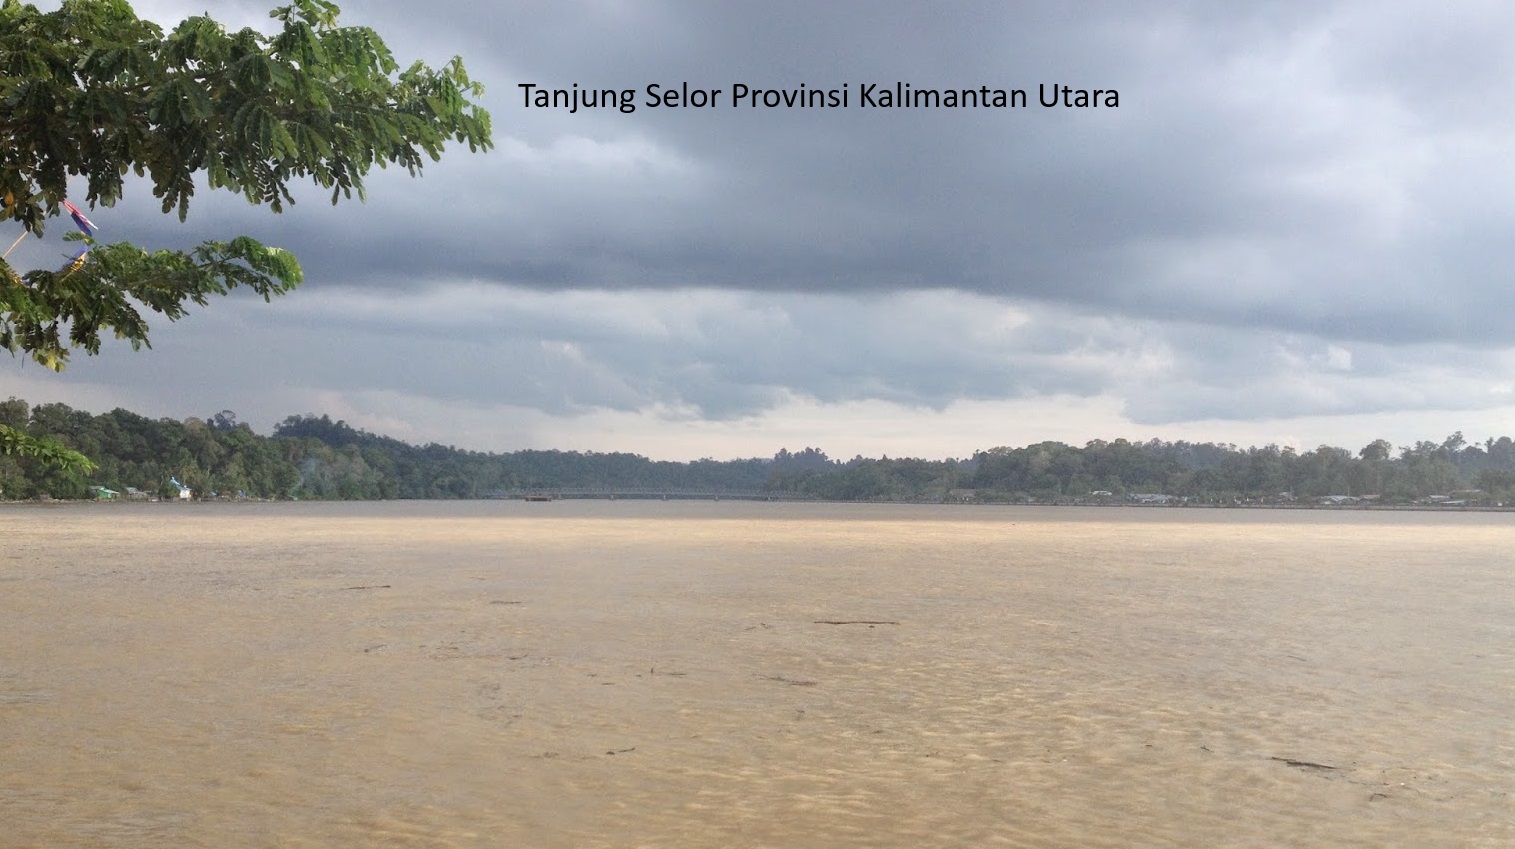 Tanjung Selor Provinsi Kalimantan Utara: Jejak Keanekaragaman Budaya dan Potensi Pembangunan